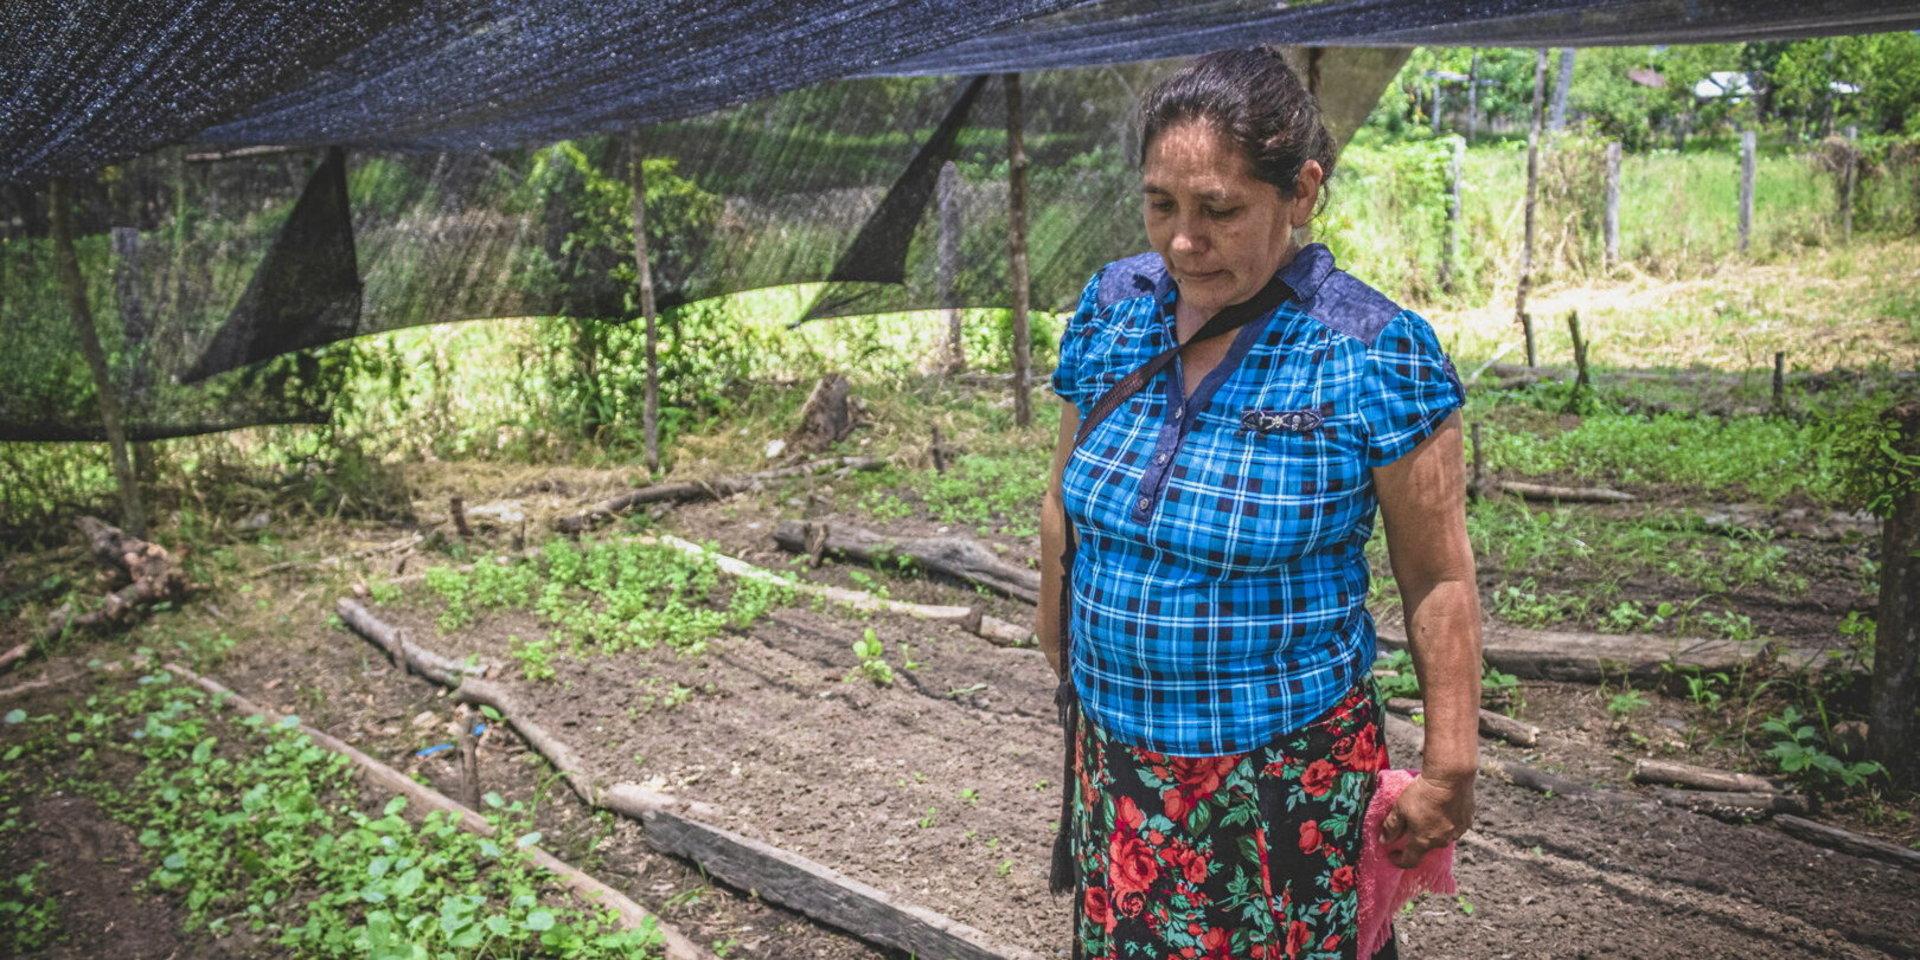 Felipa López Mazariegos i Guatemala som i dag får stöd av den svenska organisationen We Effect är en av många småskaliga bönder som kan drabbas av nedskärningen av biståndet. Bland annat kan deras arbete mot klimatförändringar och ett förändrat ekosystem påverkas.